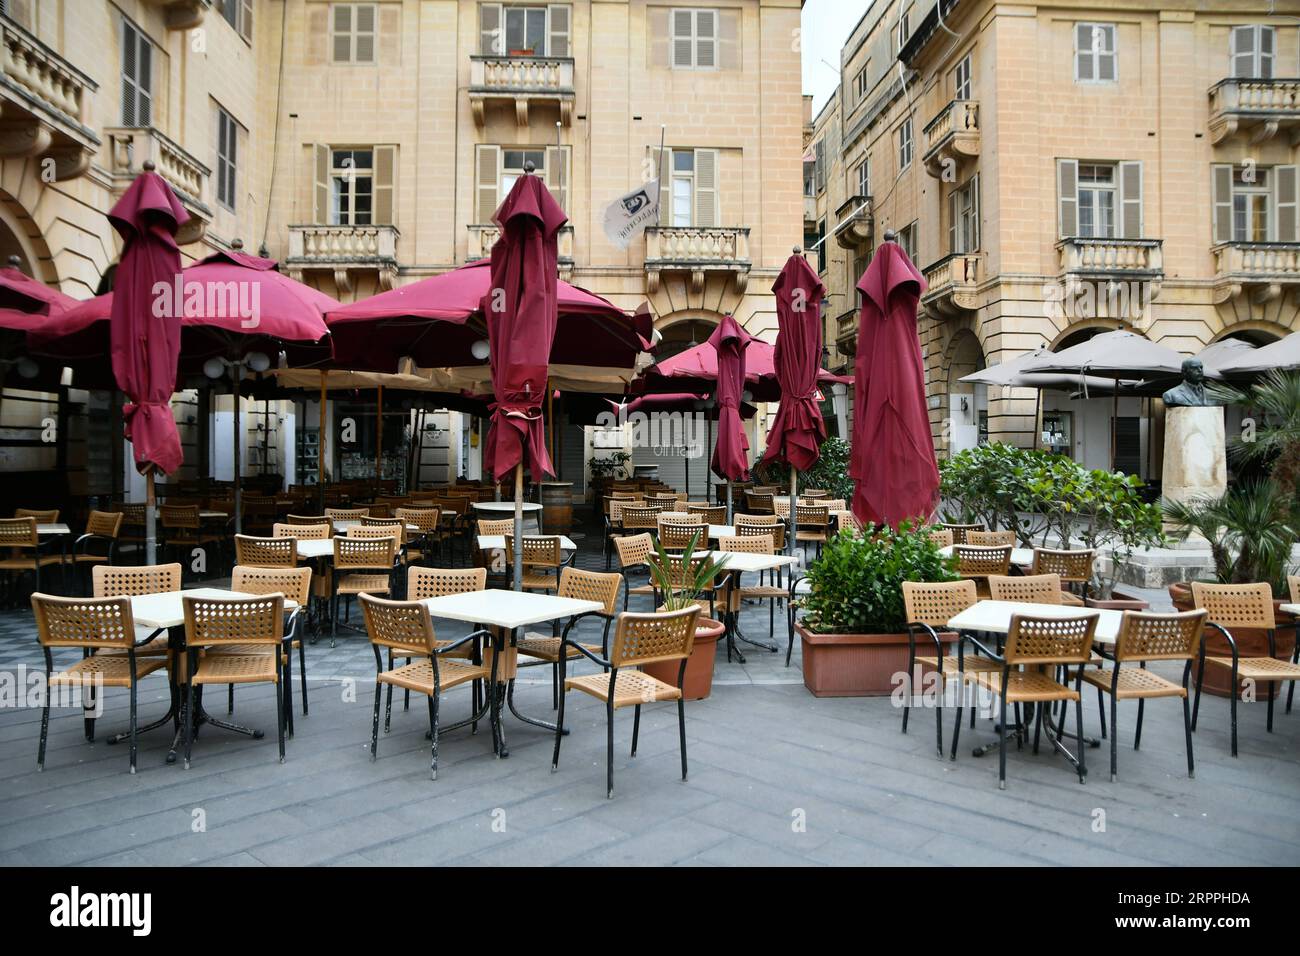 200318 -- LA VALLETTA, 18 marzo 2020 -- i posti sono vuoti fuori da un ristorante a la Valletta, Malta, il 17 marzo 2020. Malta ha annunciato la chiusura di tutti i bar, ristoranti, palestre, club, sale da gioco e qualsiasi altro luogo di intrattenimento che attiri la folla come misura per frenare la diffusione del coronavirus, ha annunciato lunedì il primo ministro Robert Abela. Foto di /Xinhua MALTA-VALLETTA-COVID-19 JonathanxBorg PUBLICATIONxNOTxINxCHN Foto Stock